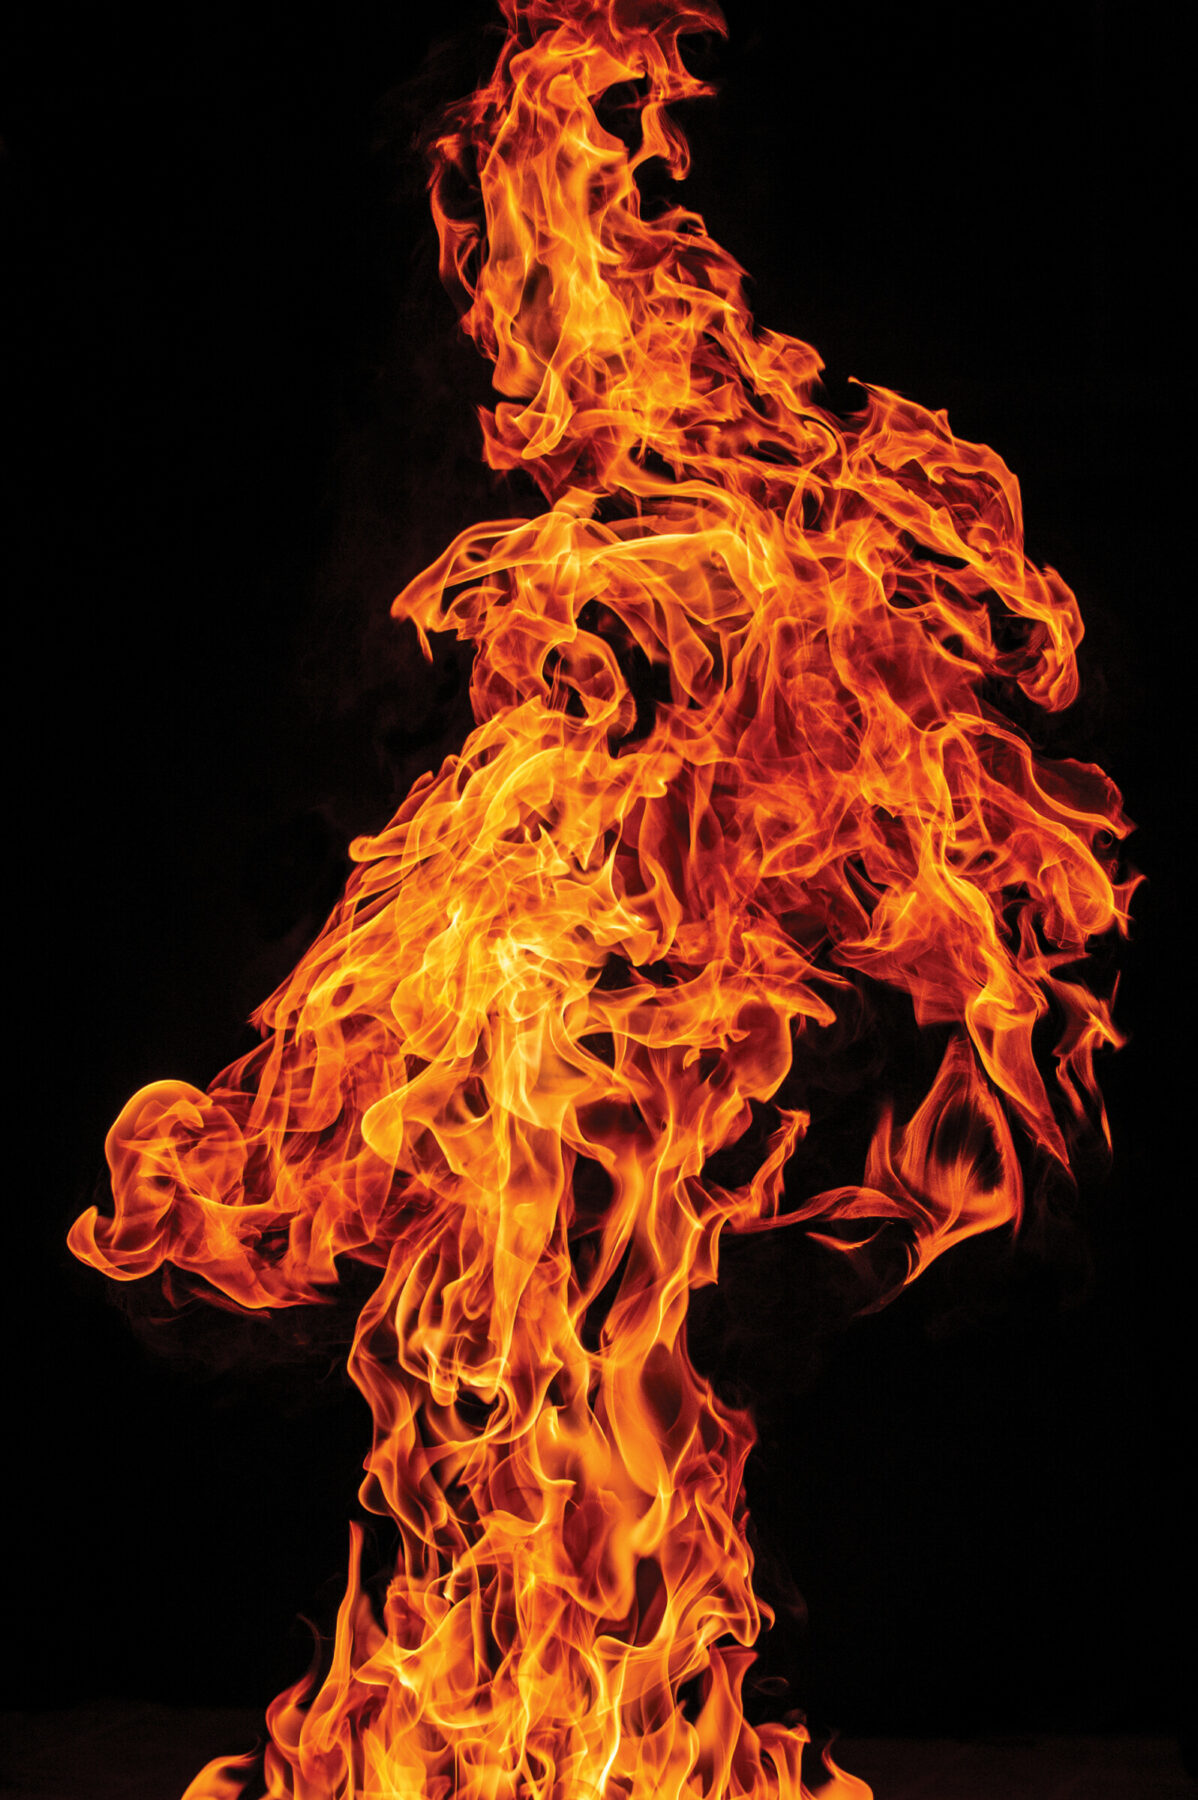 James Balog, Fire Plume #1, Missoula, Montana, USA, 2015.